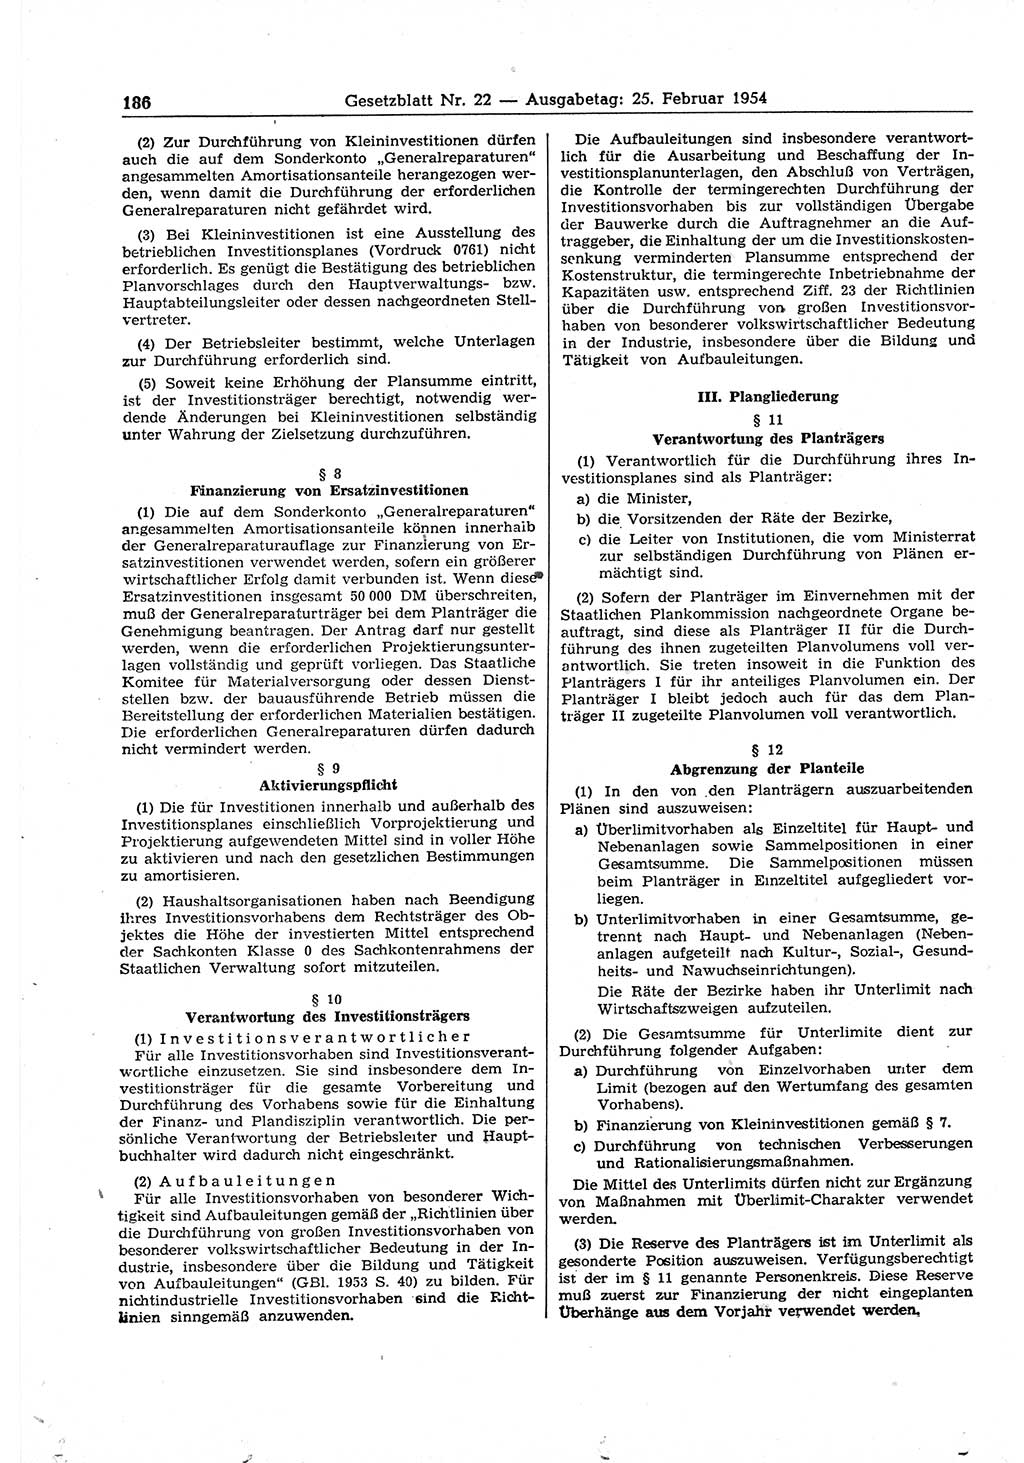 Gesetzblatt (GBl.) der Deutschen Demokratischen Republik (DDR) 1954, Seite 186 (GBl. DDR 1954, S. 186)